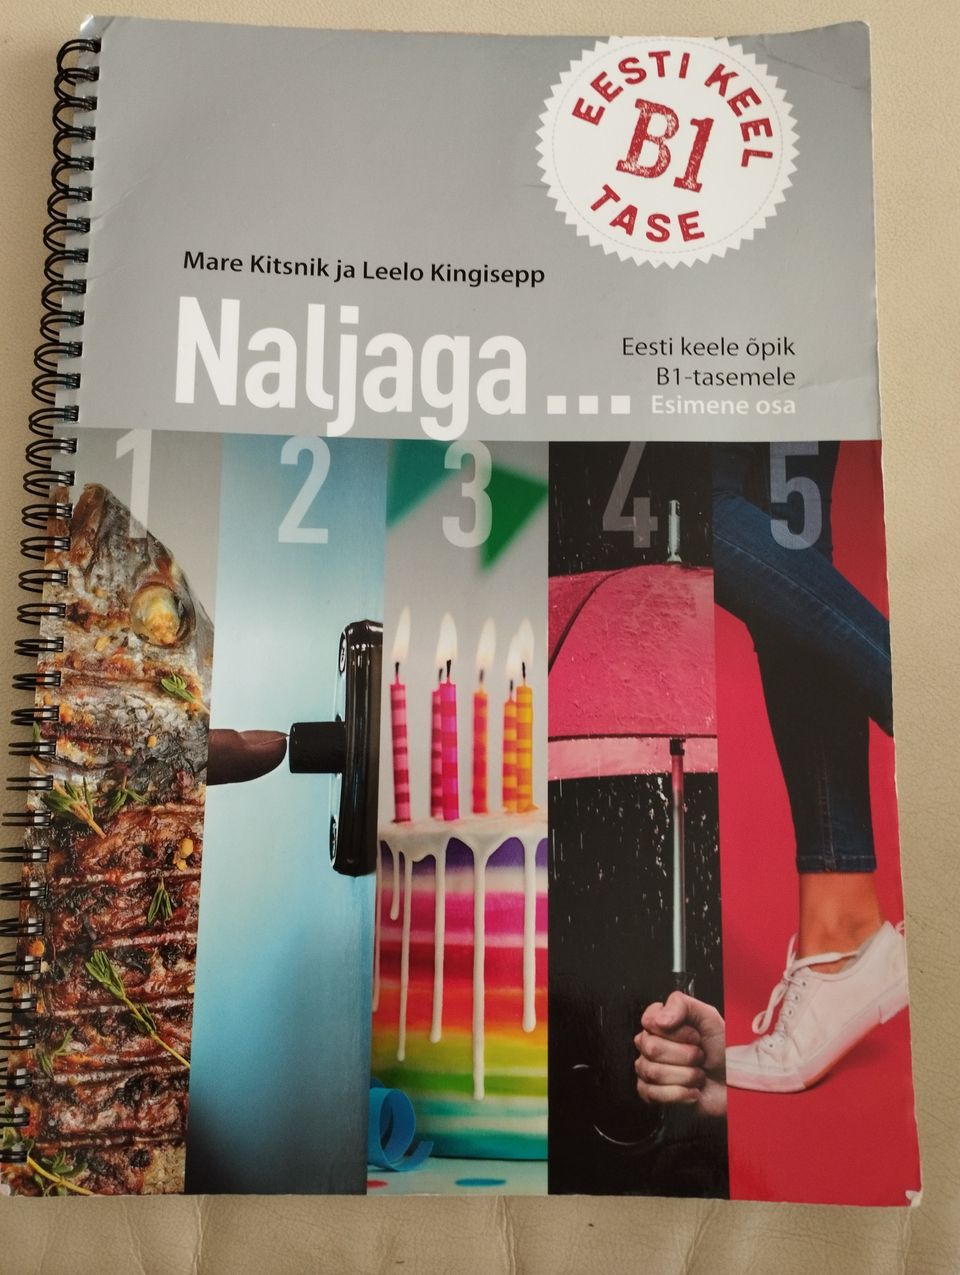 Viron kielen oppikirja Naljaga...